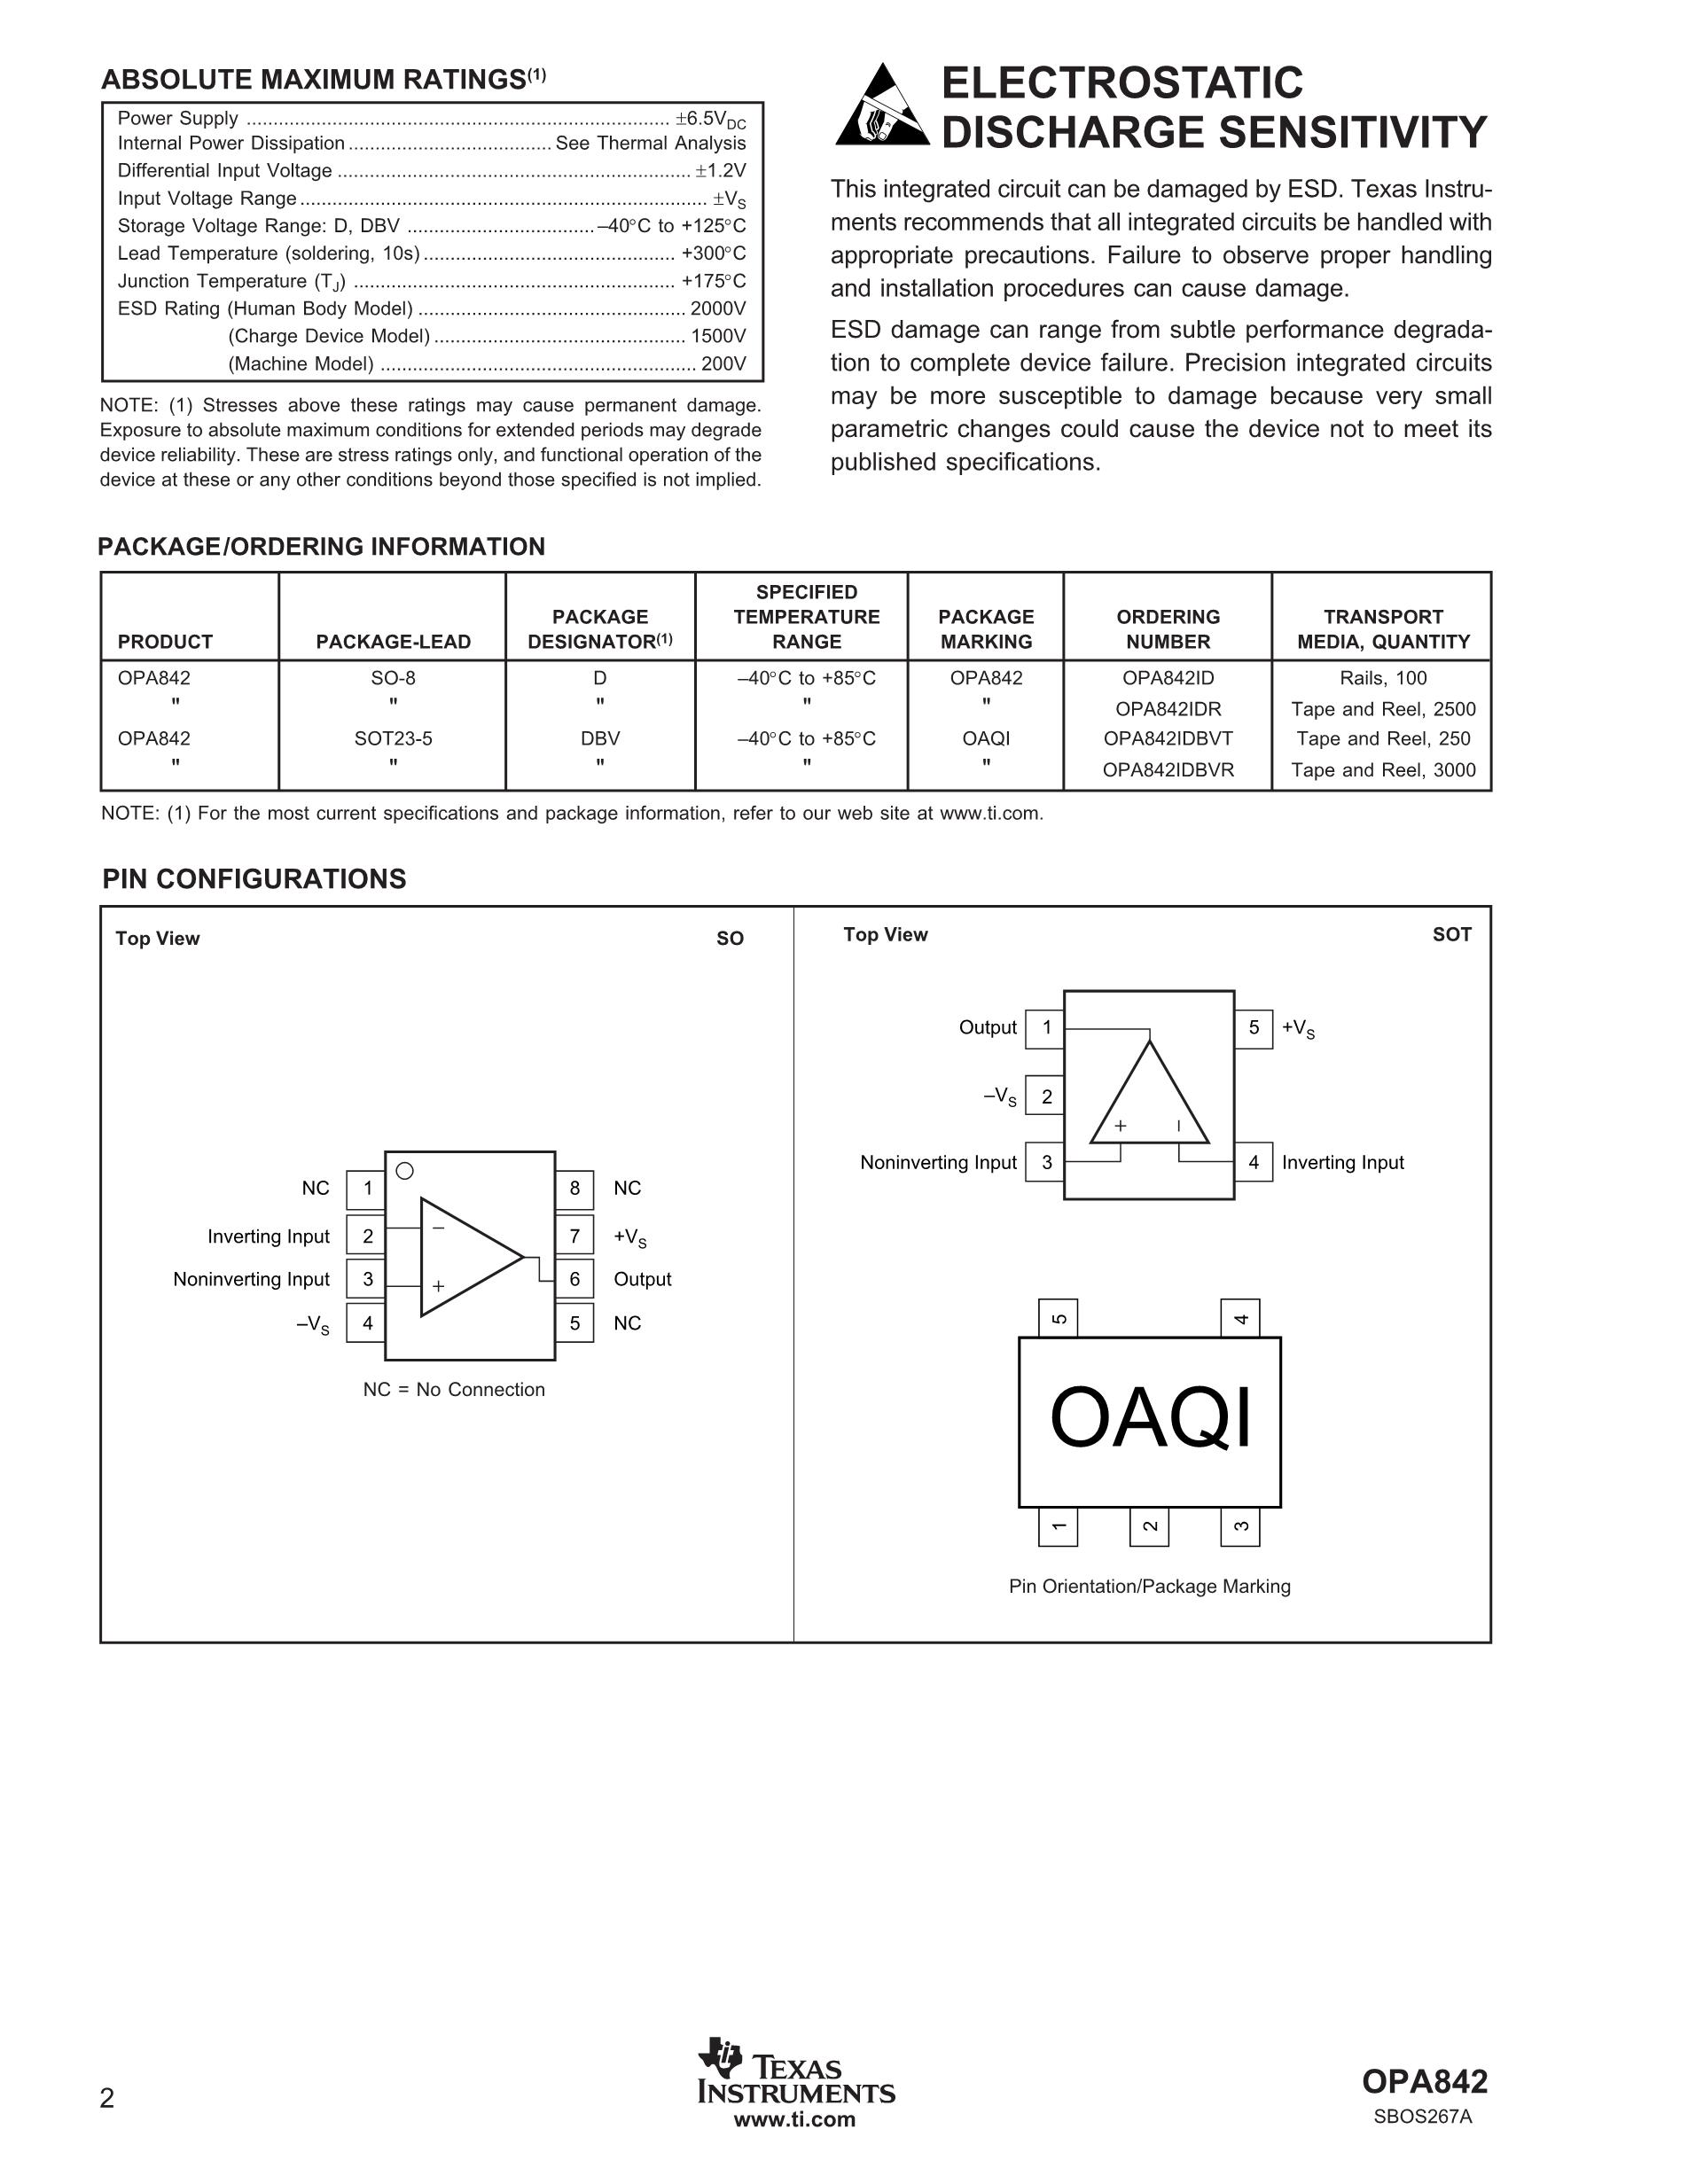 OPA857IRGTR's pdf picture 2